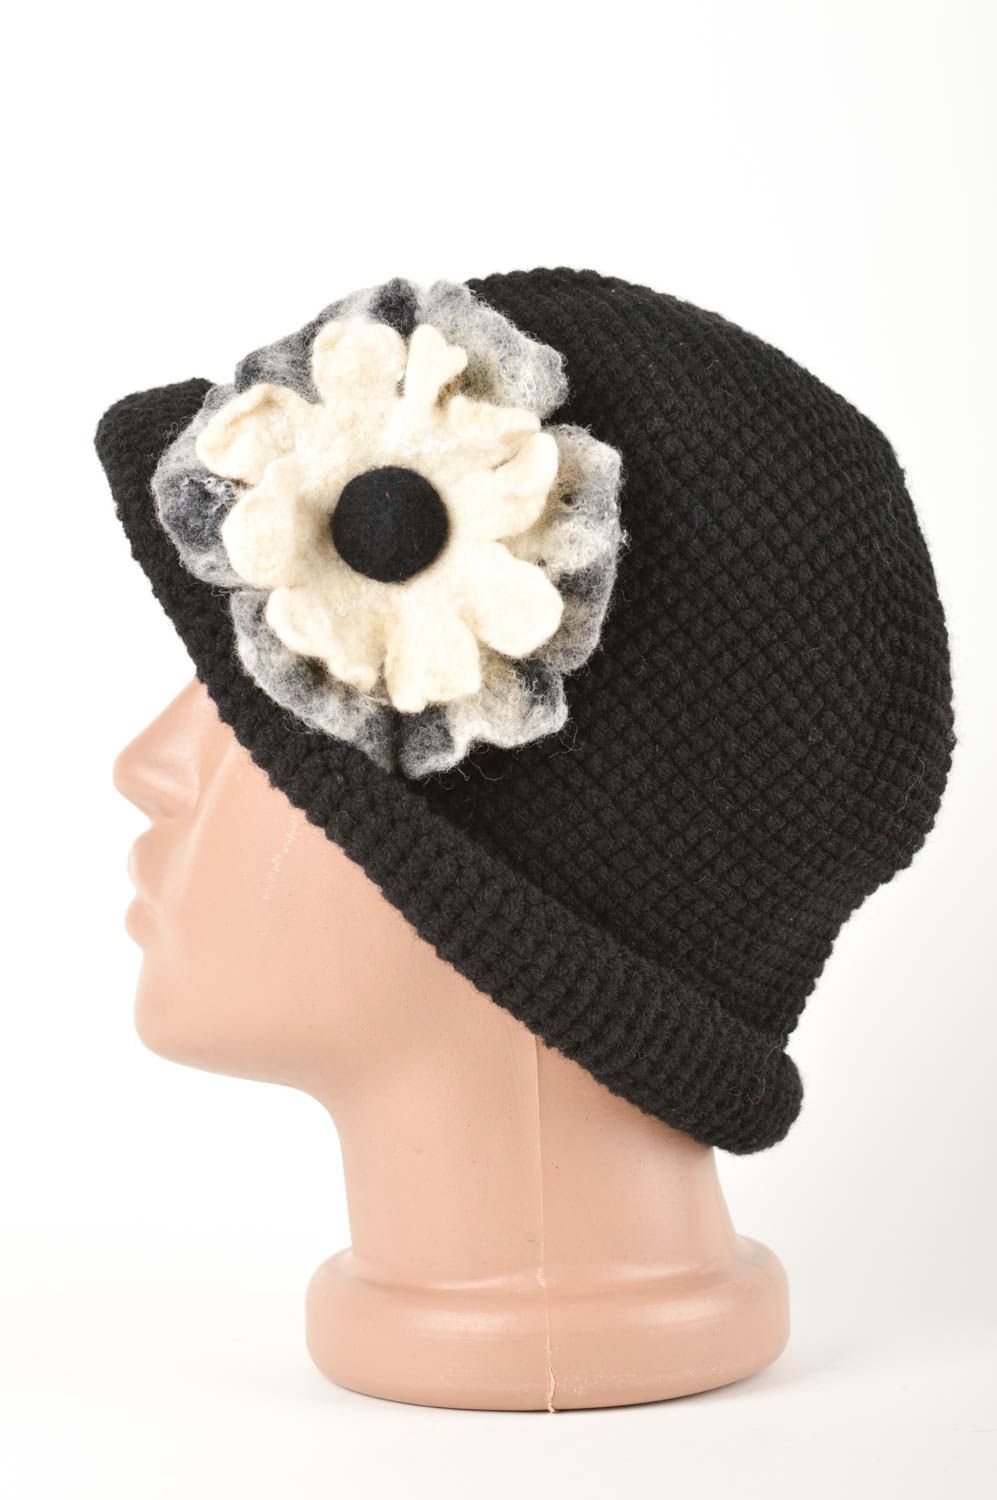 Chapeau chaud Bonnet tricot fait main Vêtement femme hiver noir laine naturelle photo 3